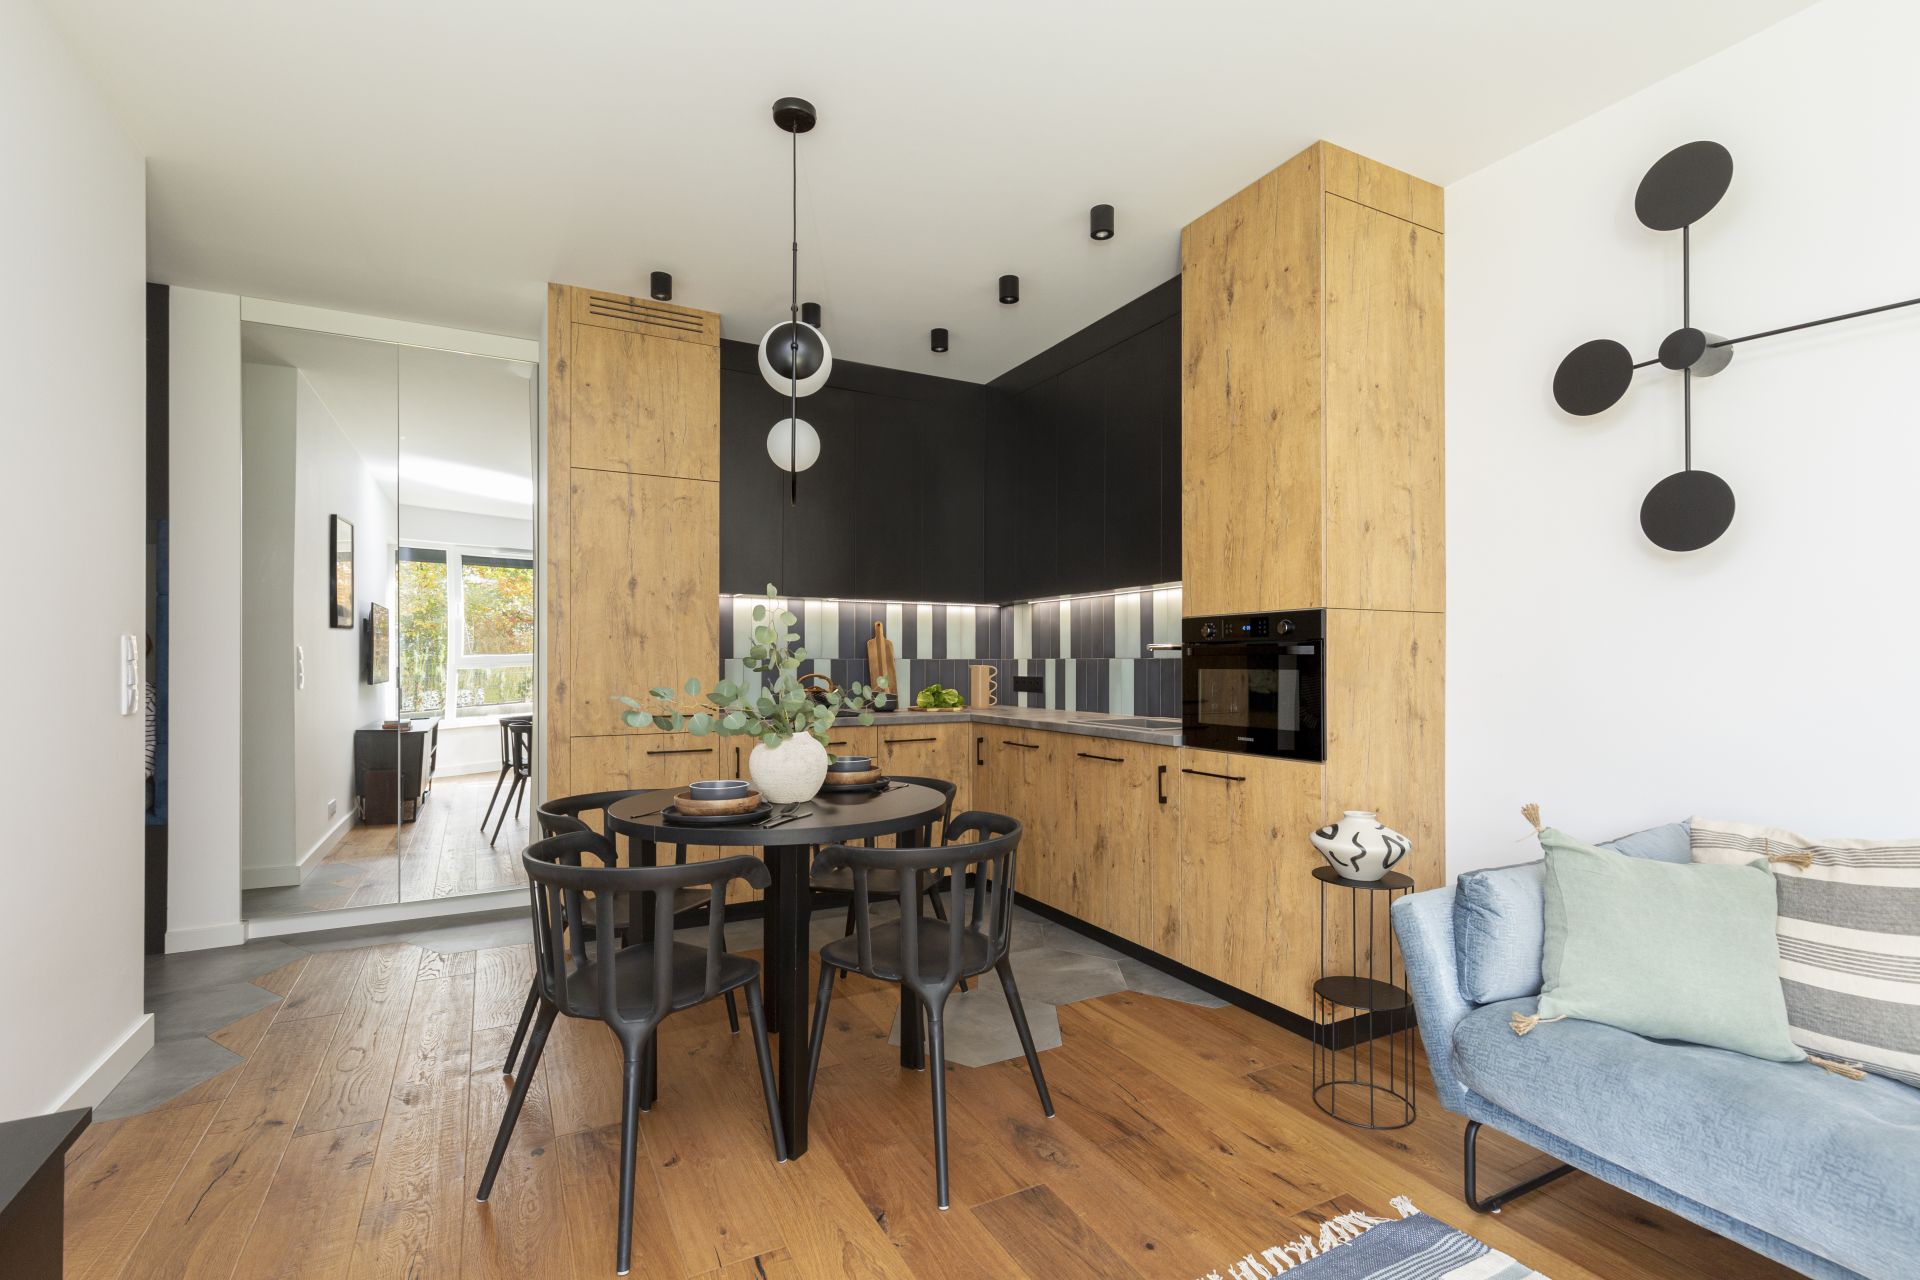 Mała kuchnia i jadalnia w salonie - mieszkanie 57 metrów. Projekt Zu projektuje – Zuzanna Kuc. Fot. Marta Behling Pion Poziom